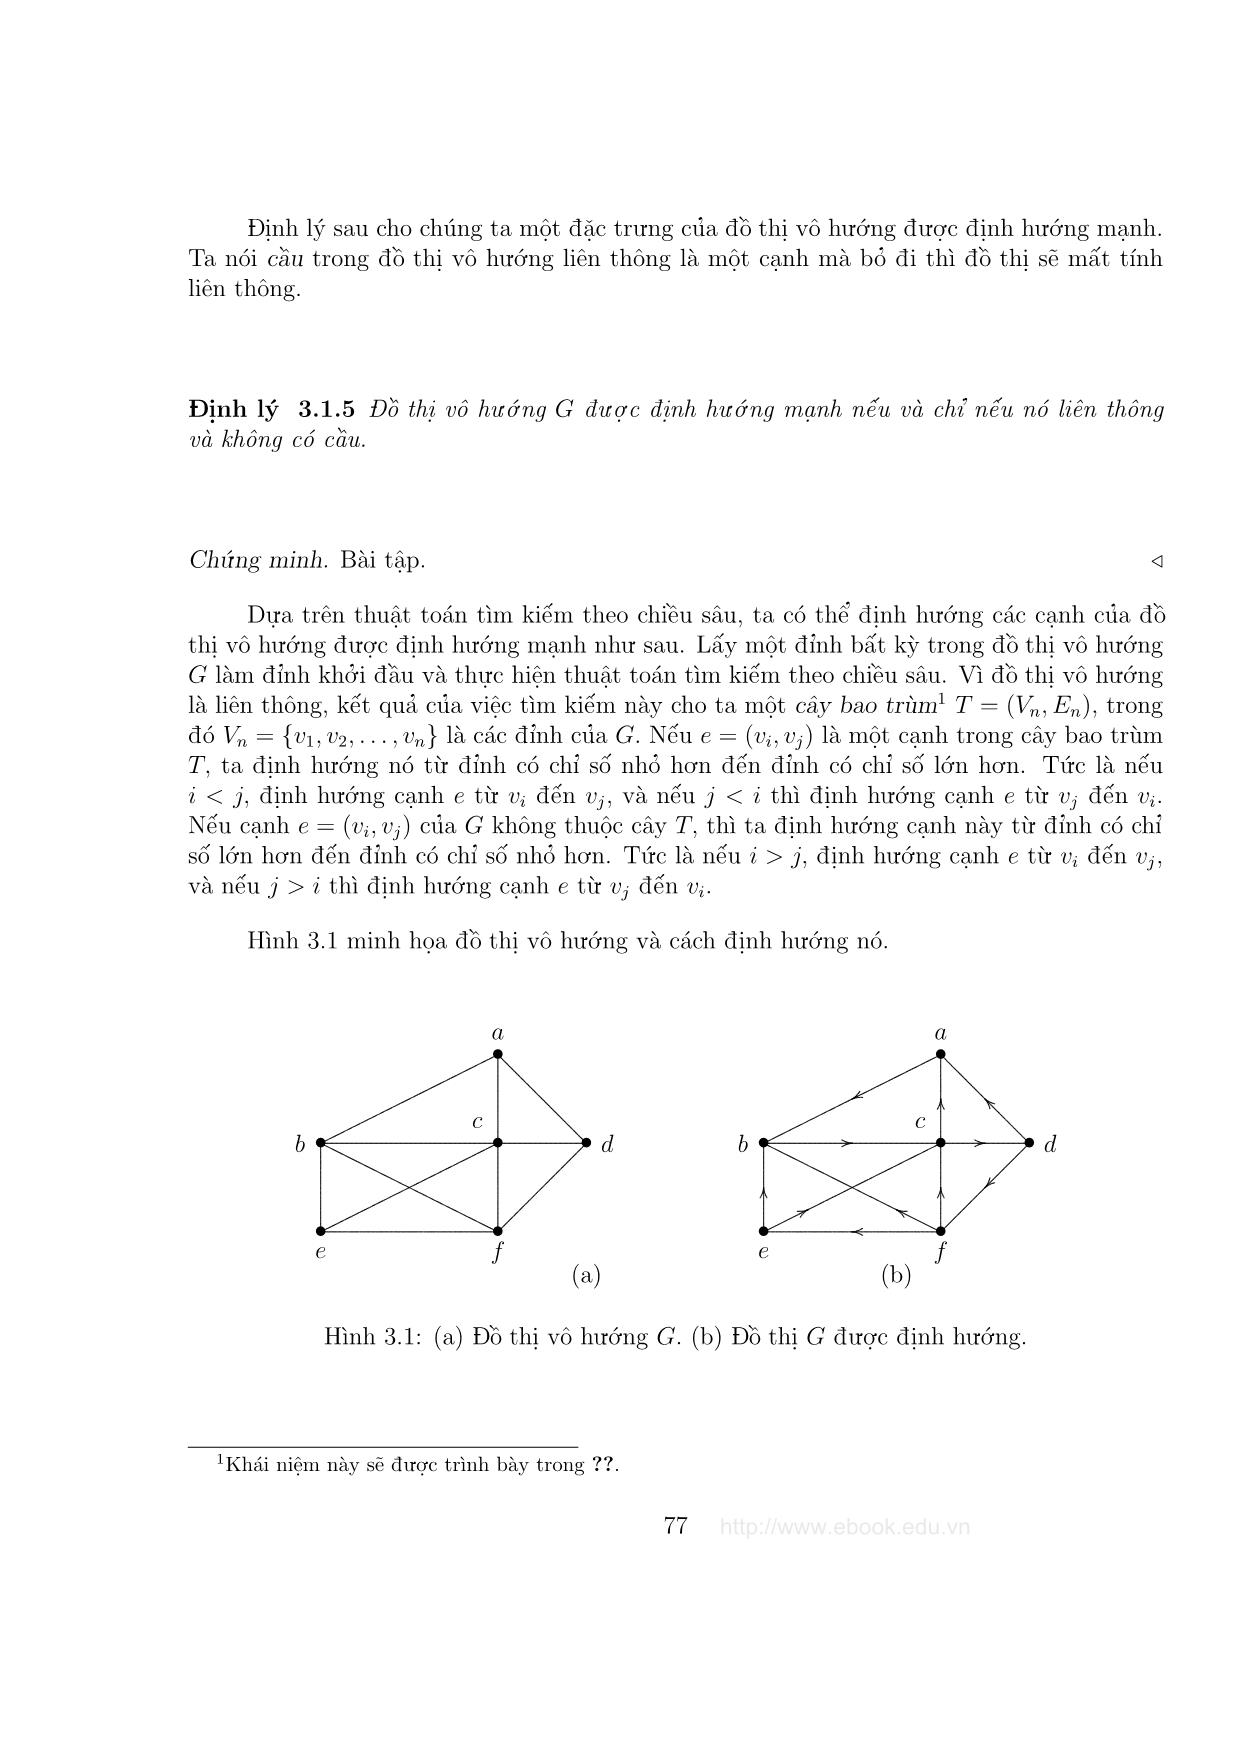 Giáo trình Đồ thị và các thuật toán - Chương 3: Các bài toán về đường đi trang 3